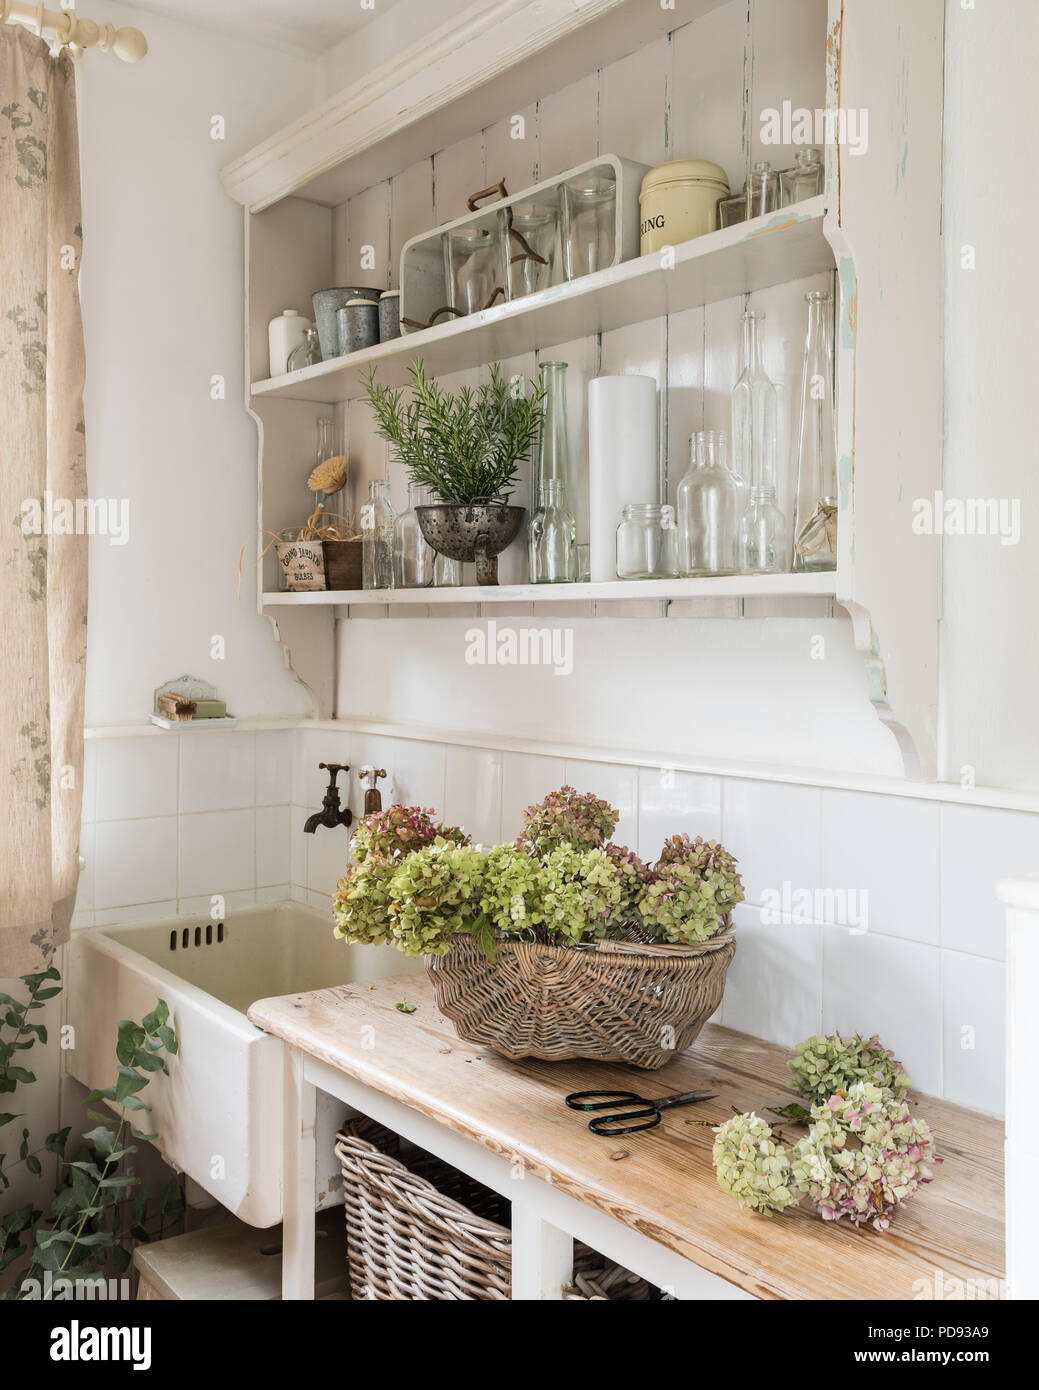 Hydrangea secos jefes en rincón de cocina en estilo rústico con lavabo de cerámica y estanterías de madera abiertas Foto de stock